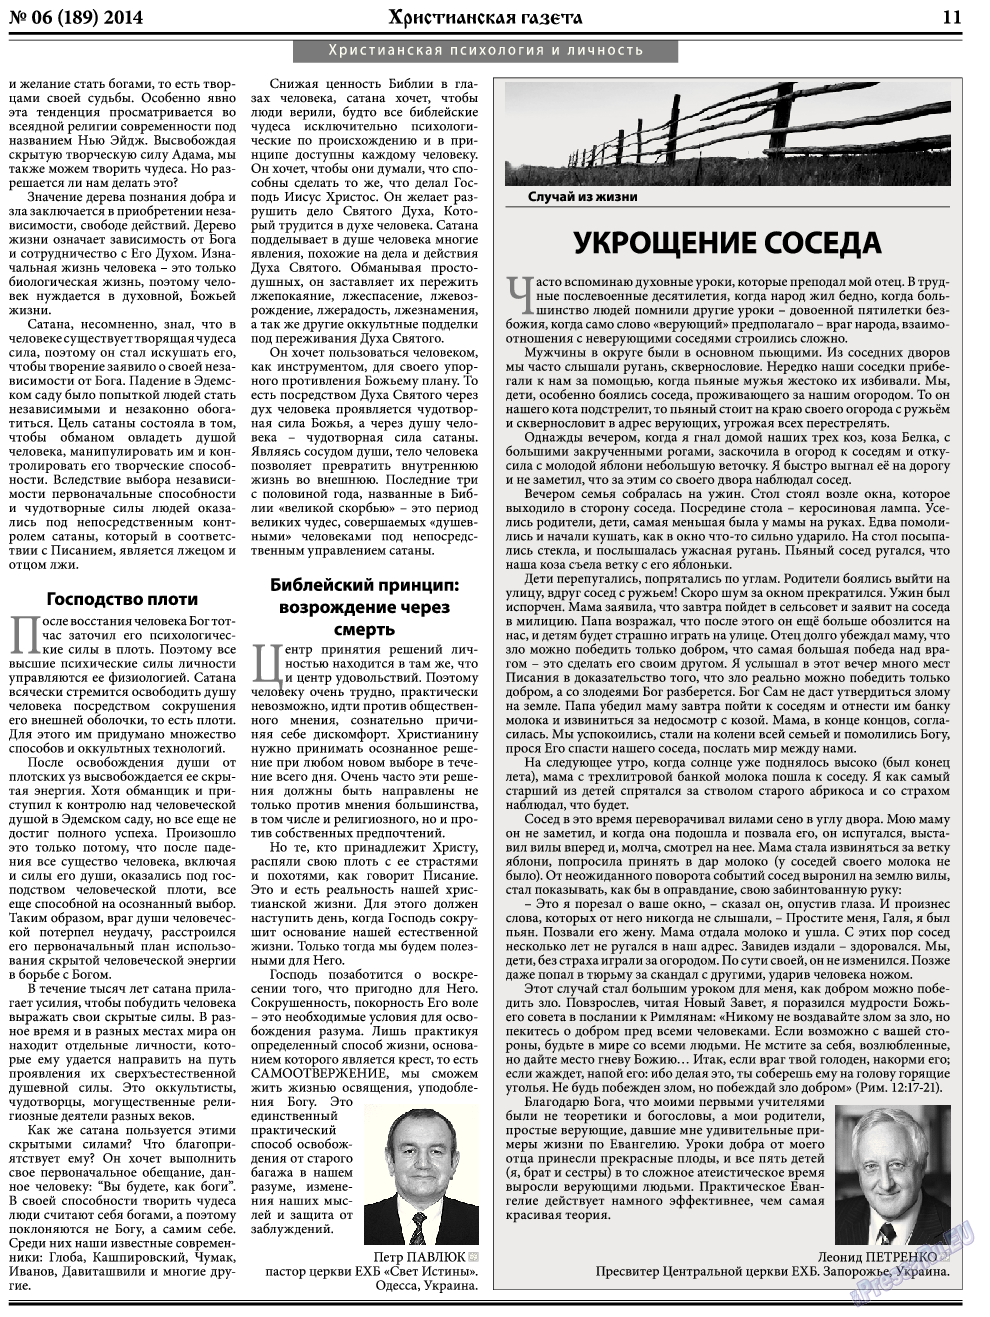 Христианская газета, газета. 2014 №6 стр.11